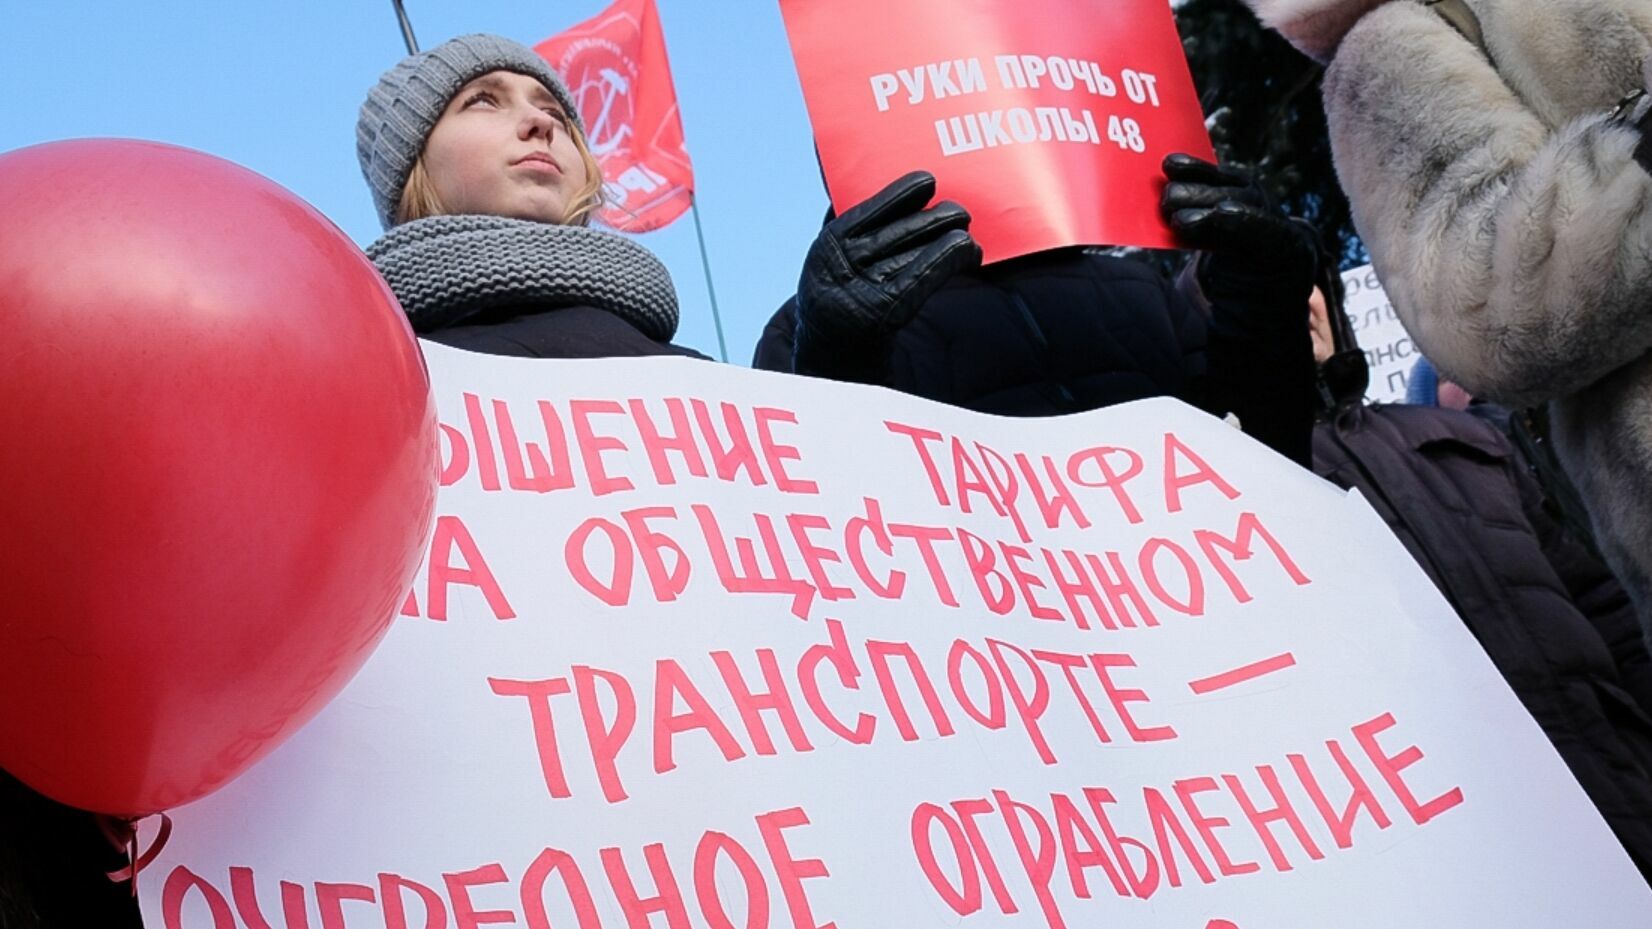 В Перми с седьмой попытки удалось согласовать митинг против транспортной реформы